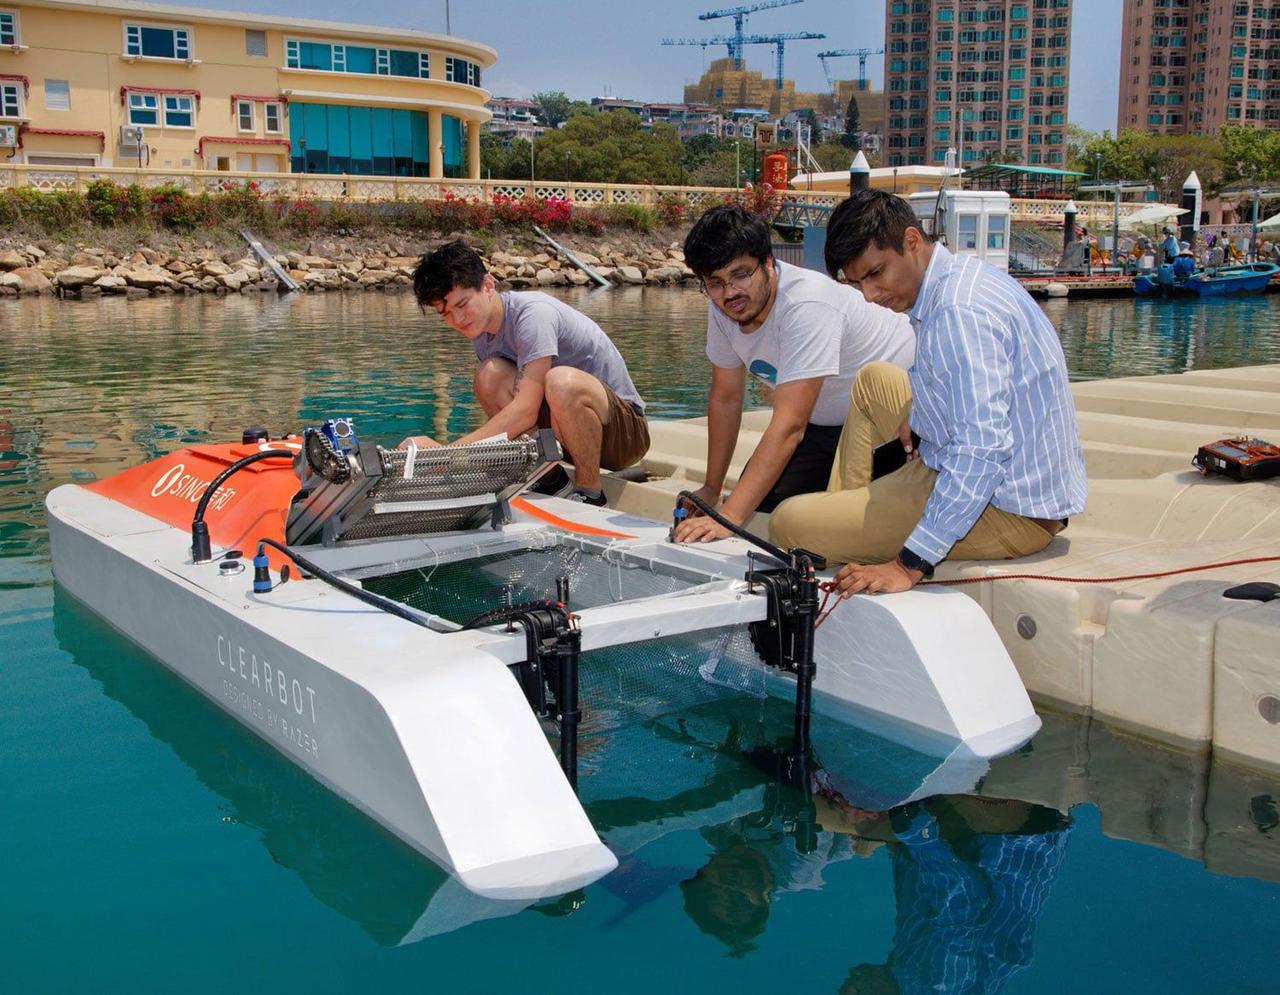 Роботизированная лодка с искусственным интеллектом способна собирать тонны пластиковых отходов в морях и реках